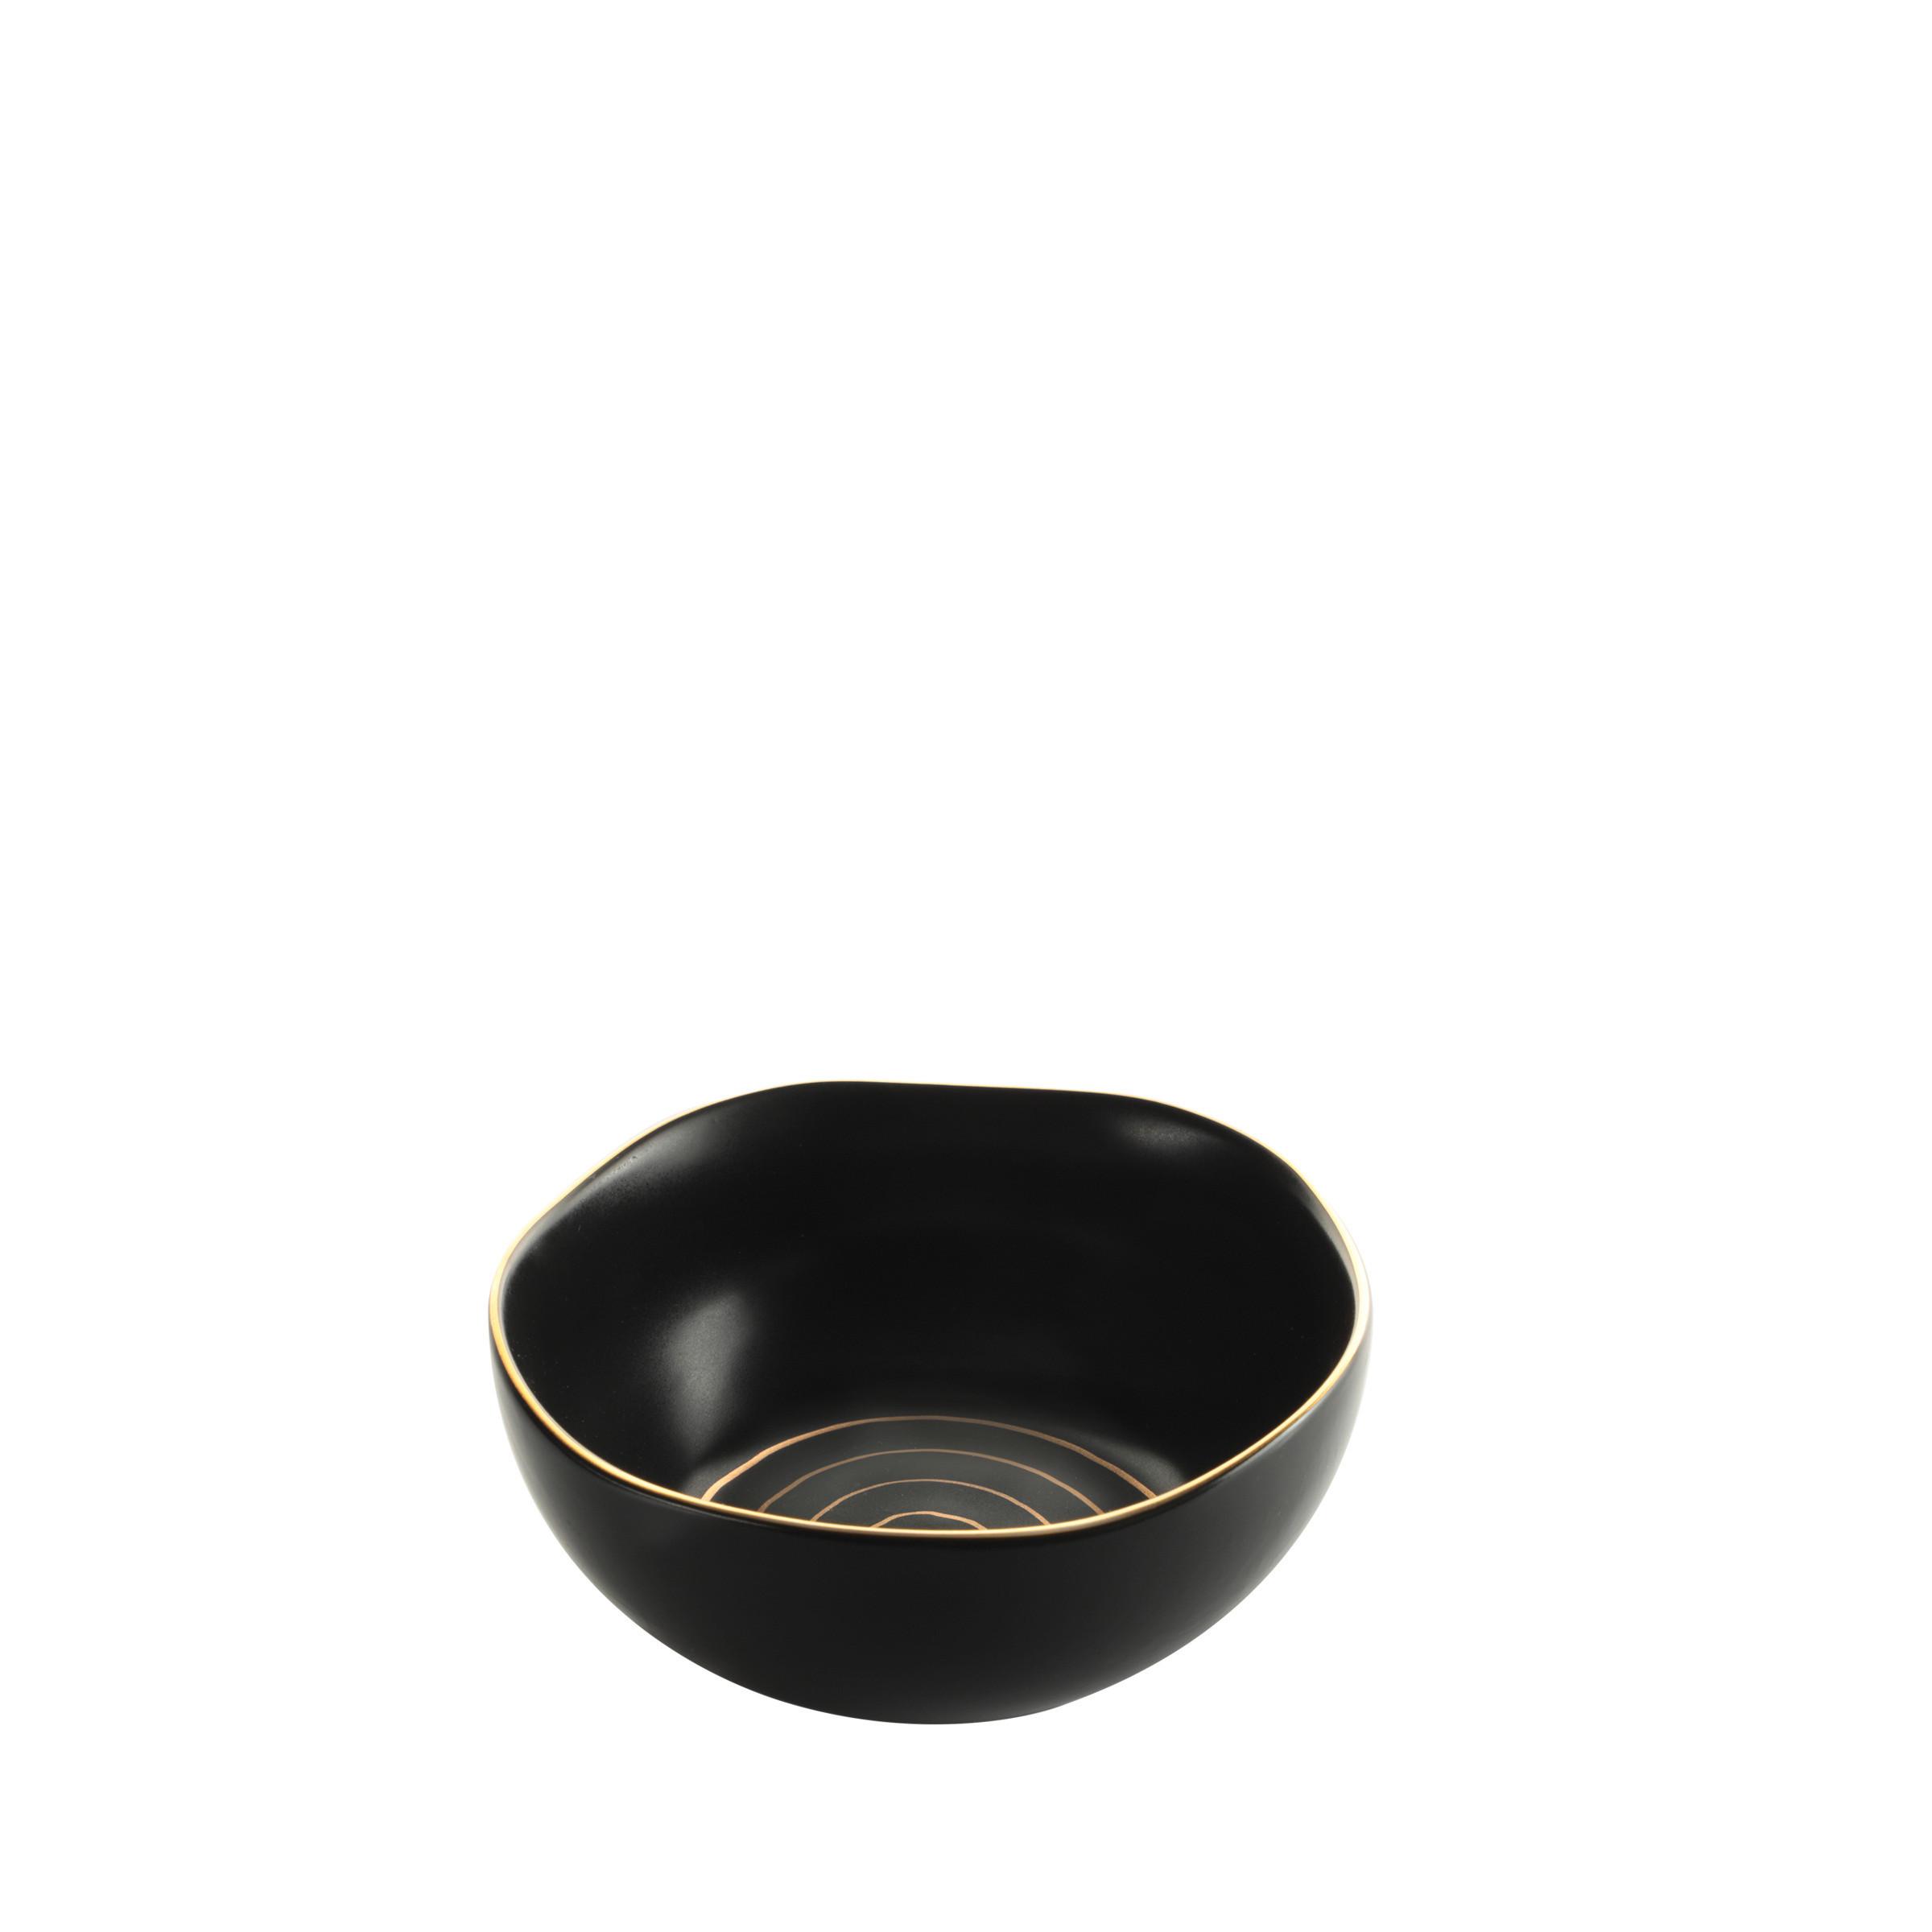 Müslischale Onix aus Porzellan Ø ca. 15cm - Goldfarben/Schwarz, Modern, Keramik (15/7cm) - Premium Living